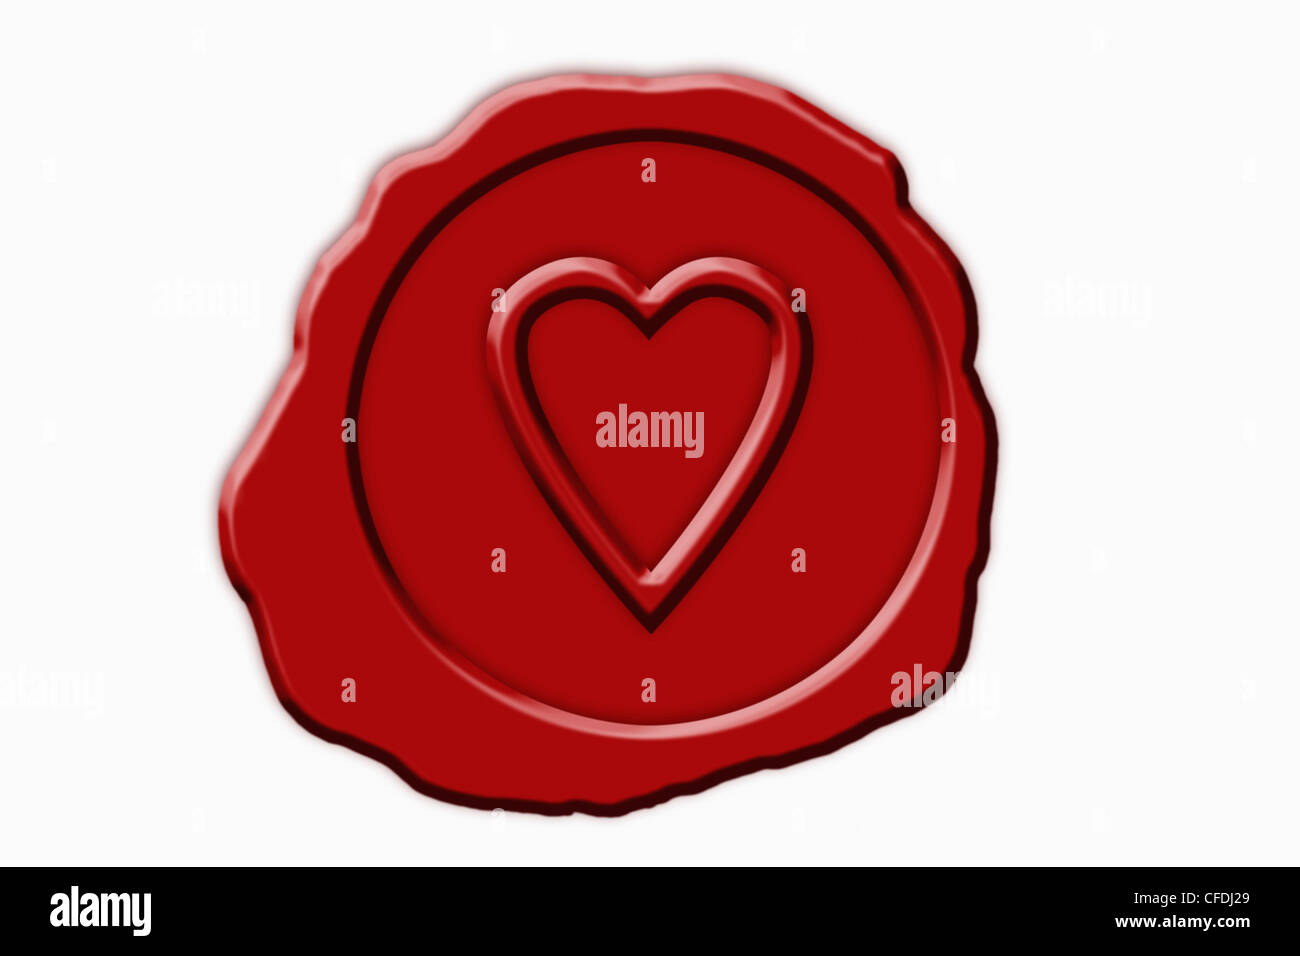 Dettaglio foto di un sigillo rosso con un simbolo del cuore in medio Foto Stock